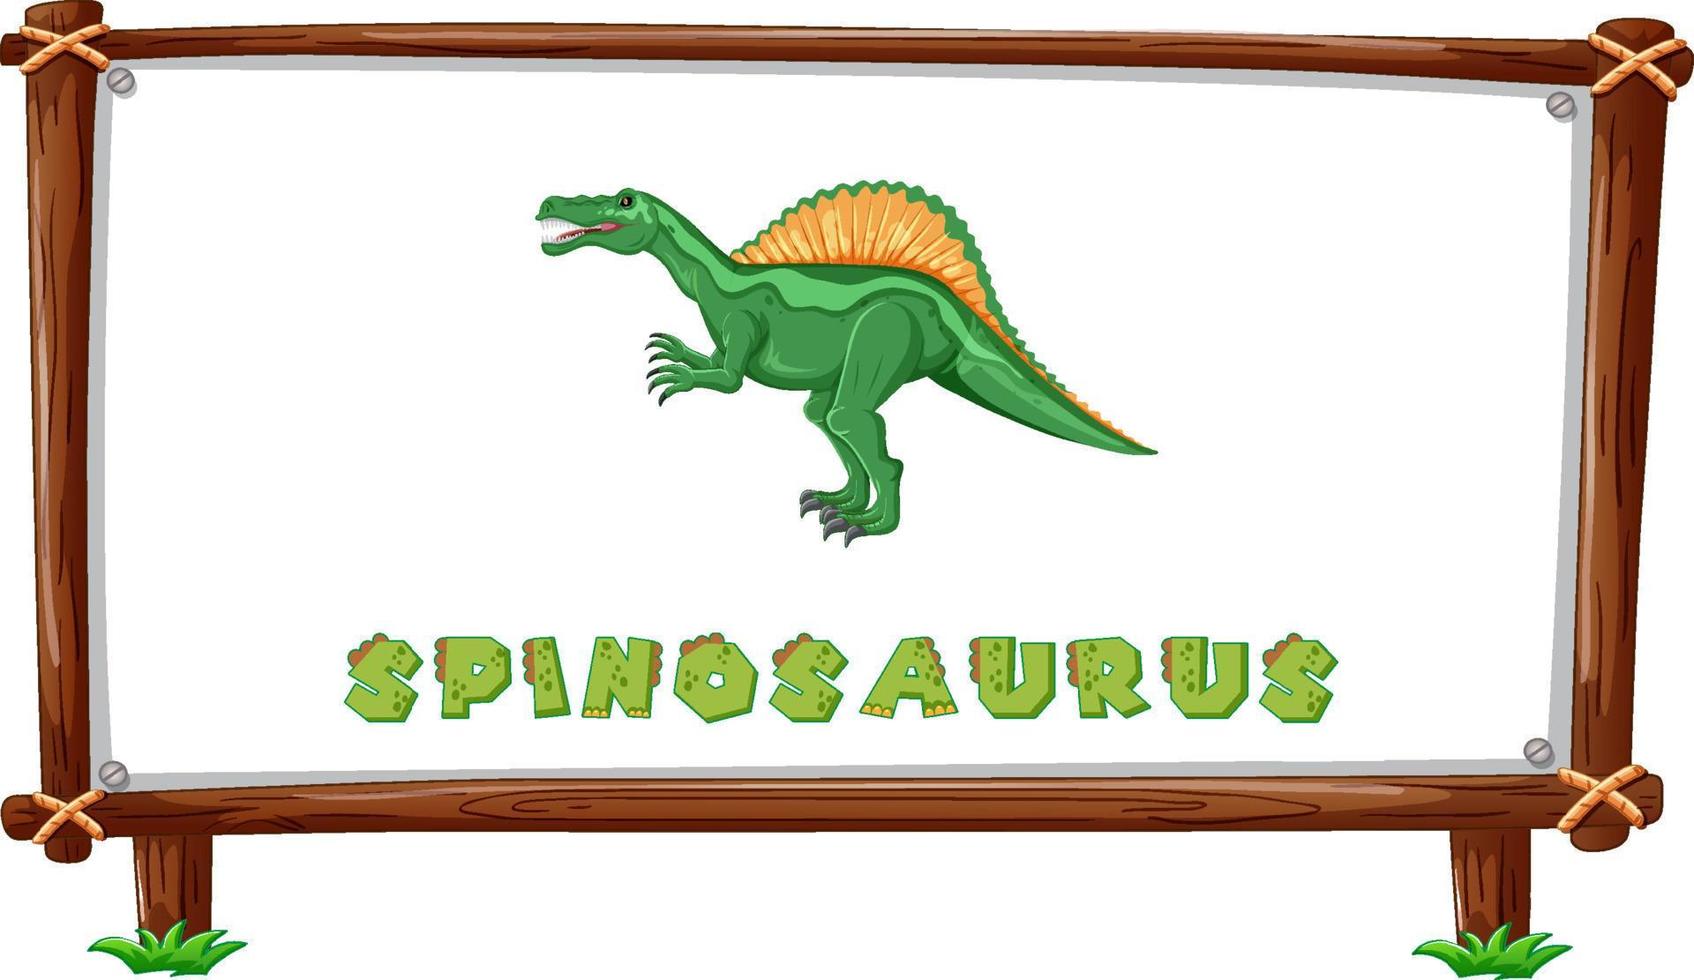 framesjabloon met dinosaurussen en tekst spinosaurus-ontwerp erin vector